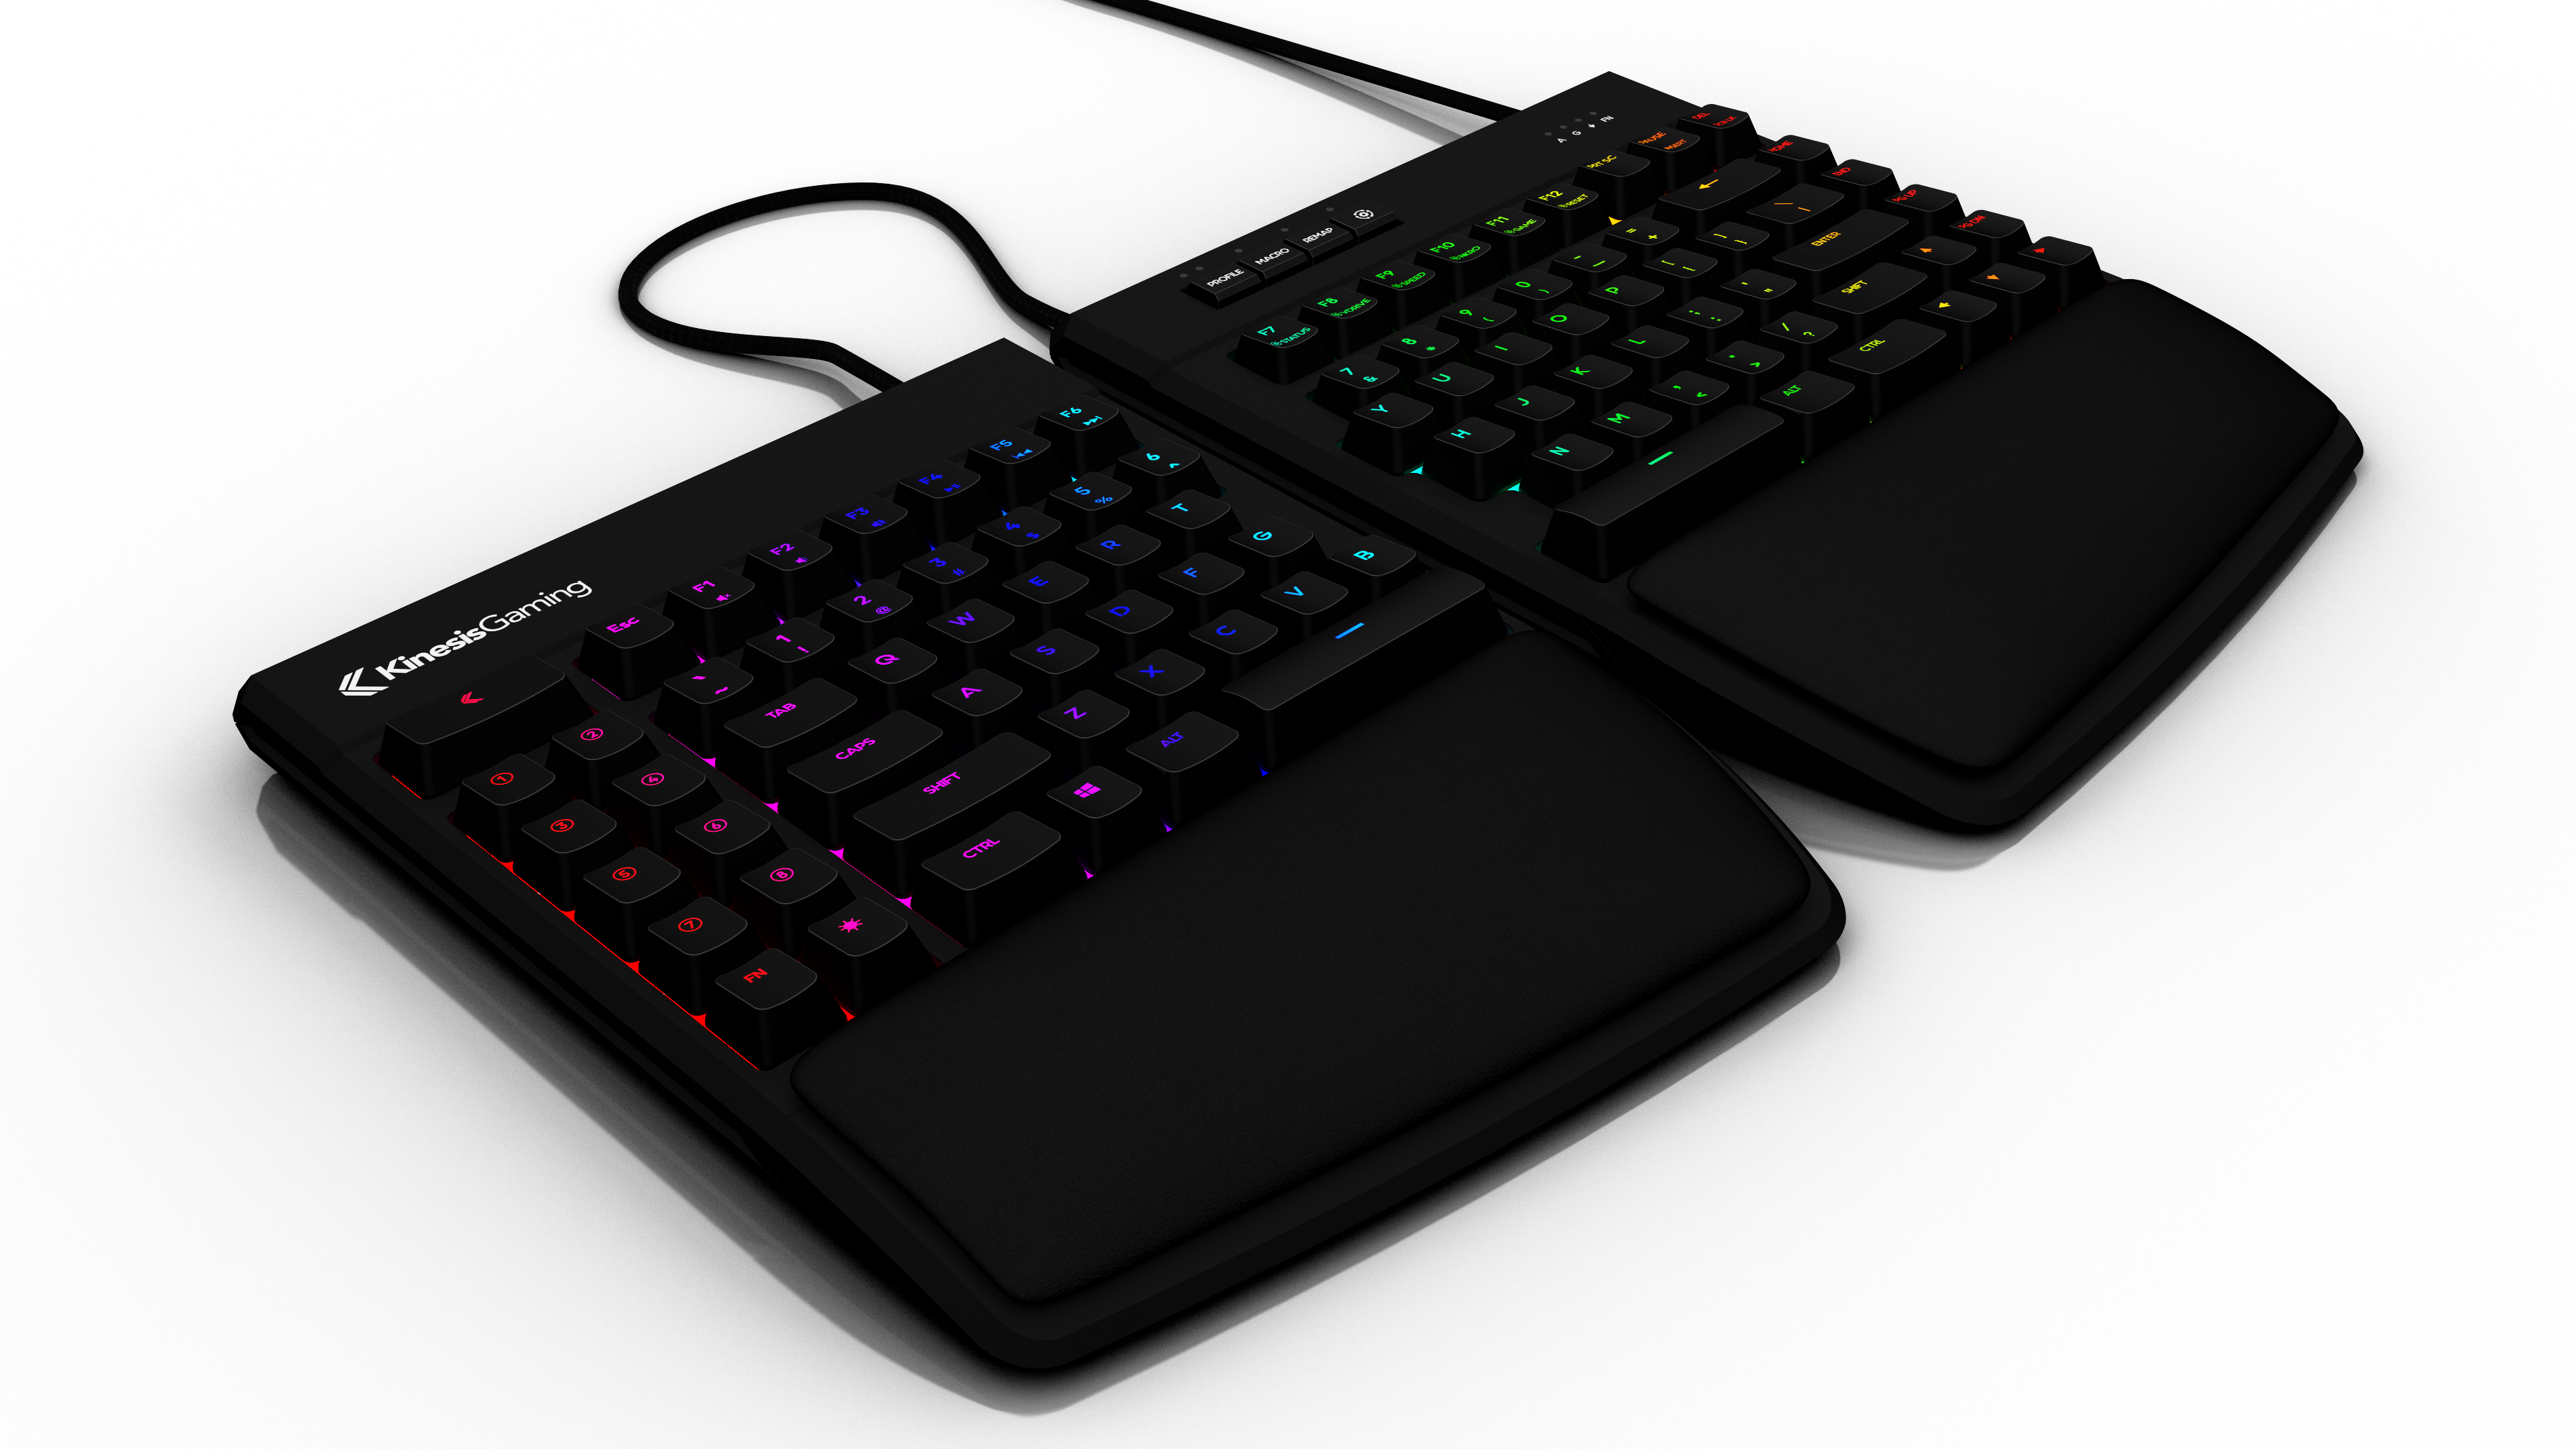 Kinesis Freestyle Edge RGB Gaming Split Keyboard